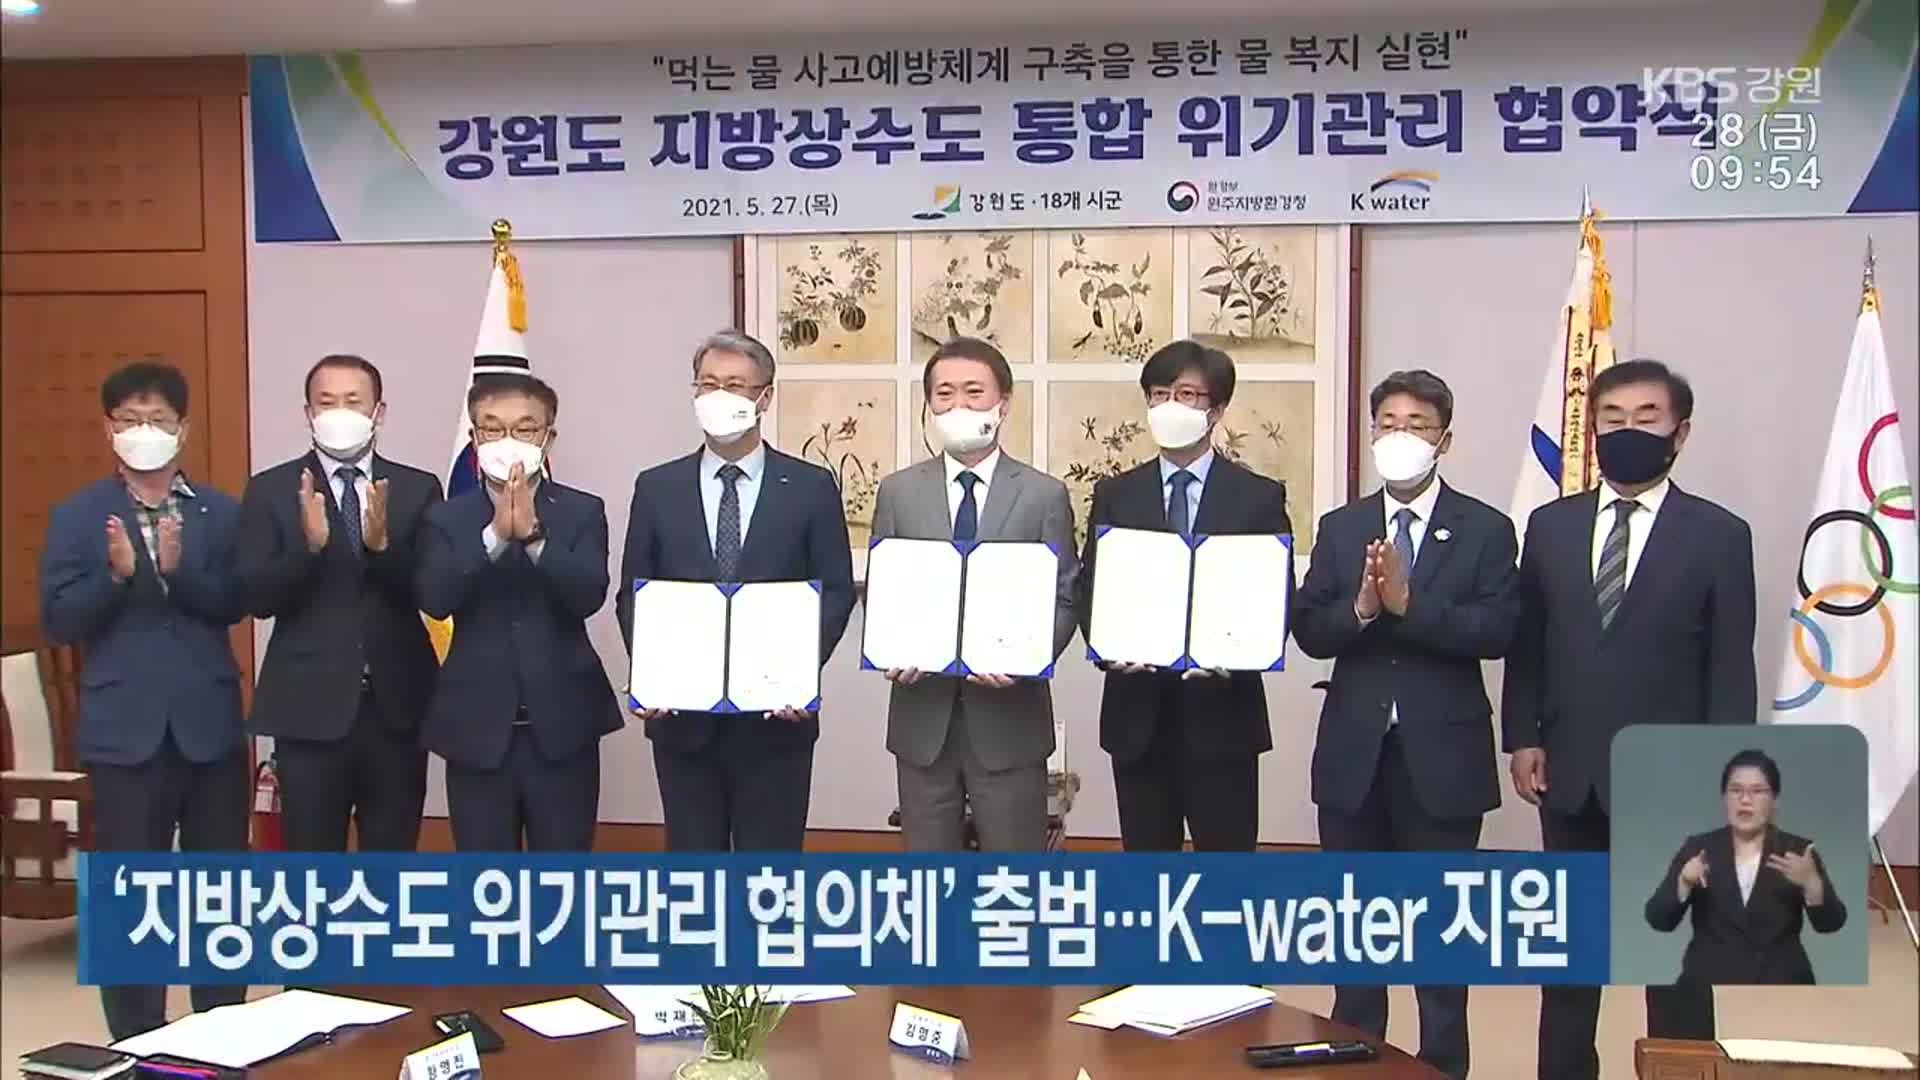 ‘지방상수도 위기관리 협의체’ 출범…K-water 지원